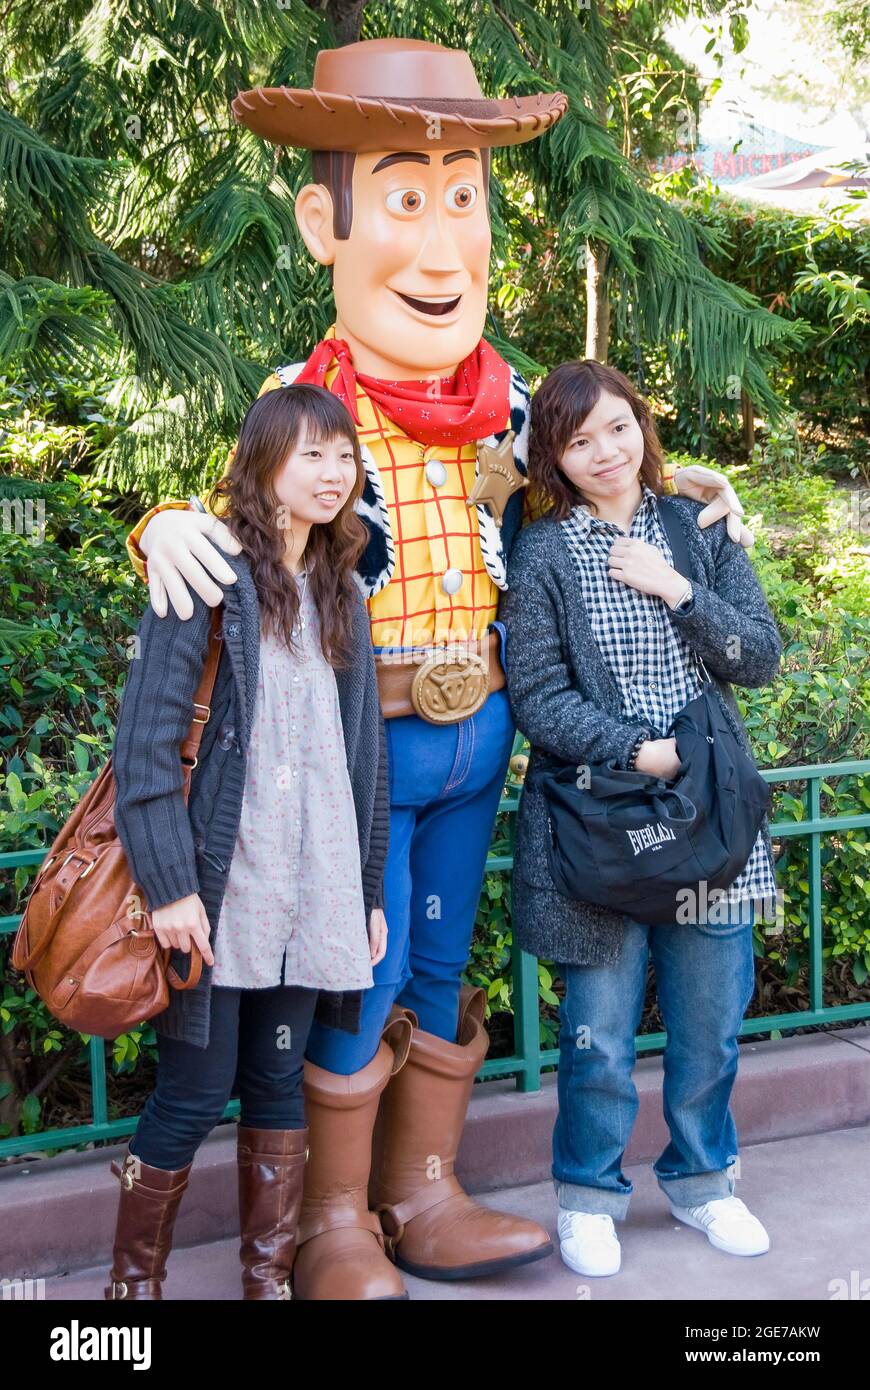 'Woody the Cowboy' character with young women, Fantasyland, Hong Kong Disneyland Resort, Lantau Island, Hong Kong, China Stock Photo